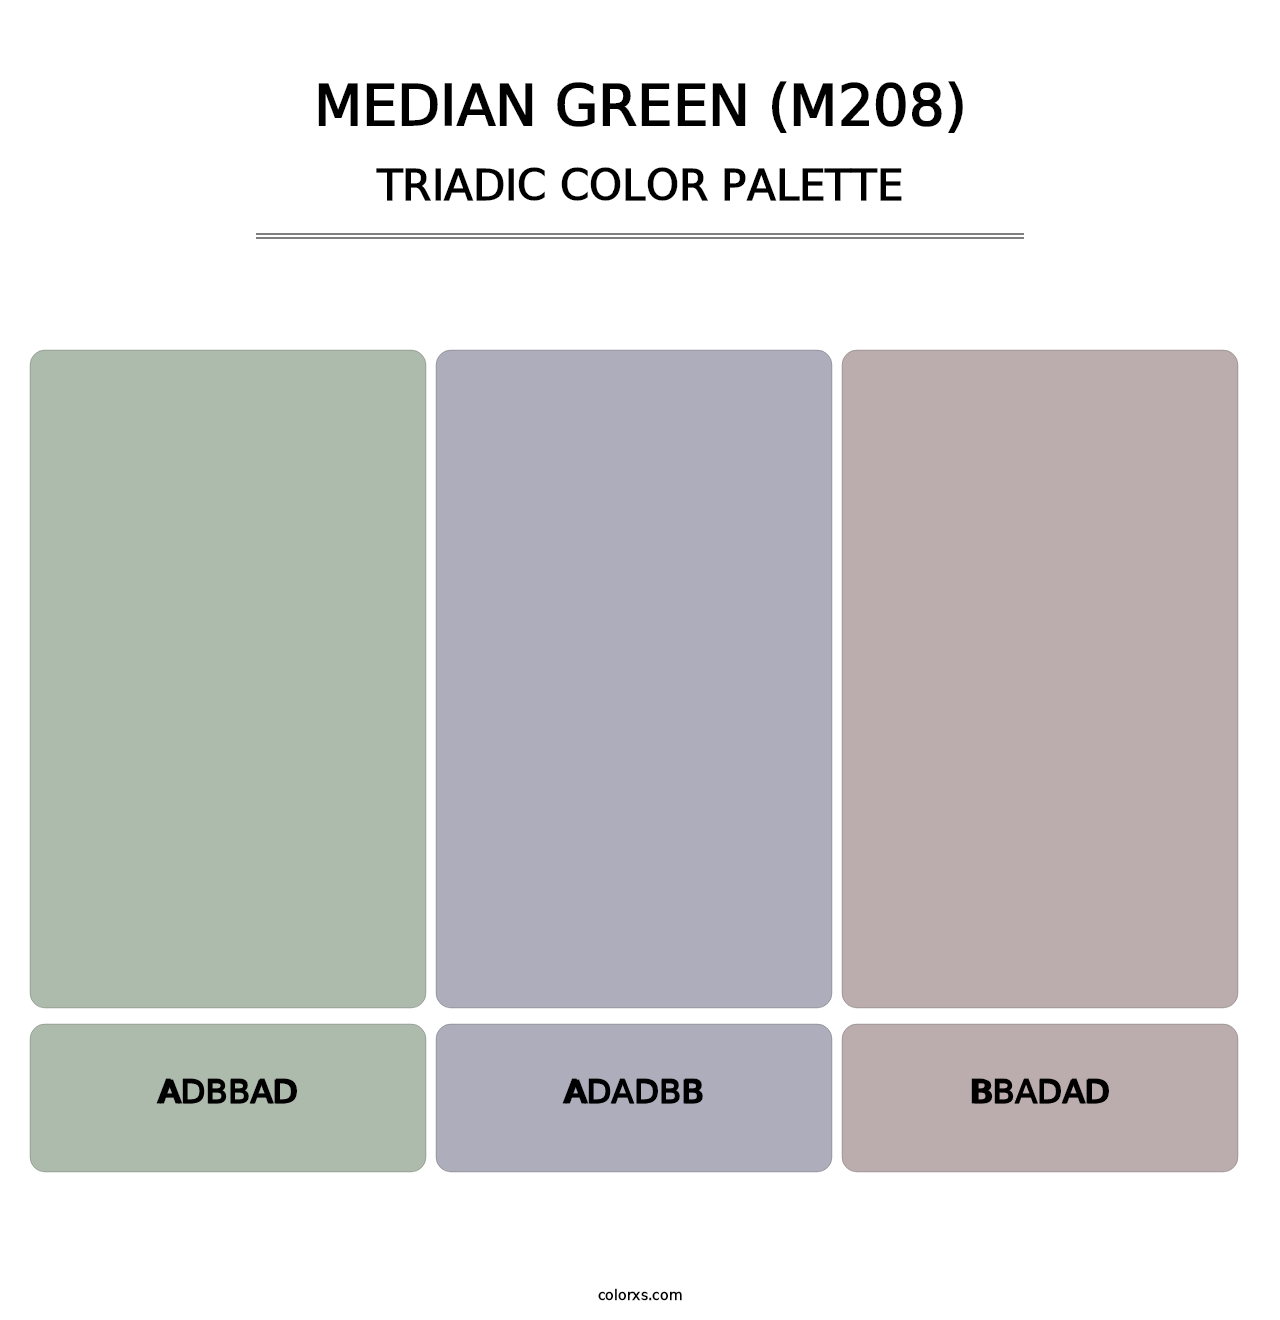 Median Green (M208) - Triadic Color Palette